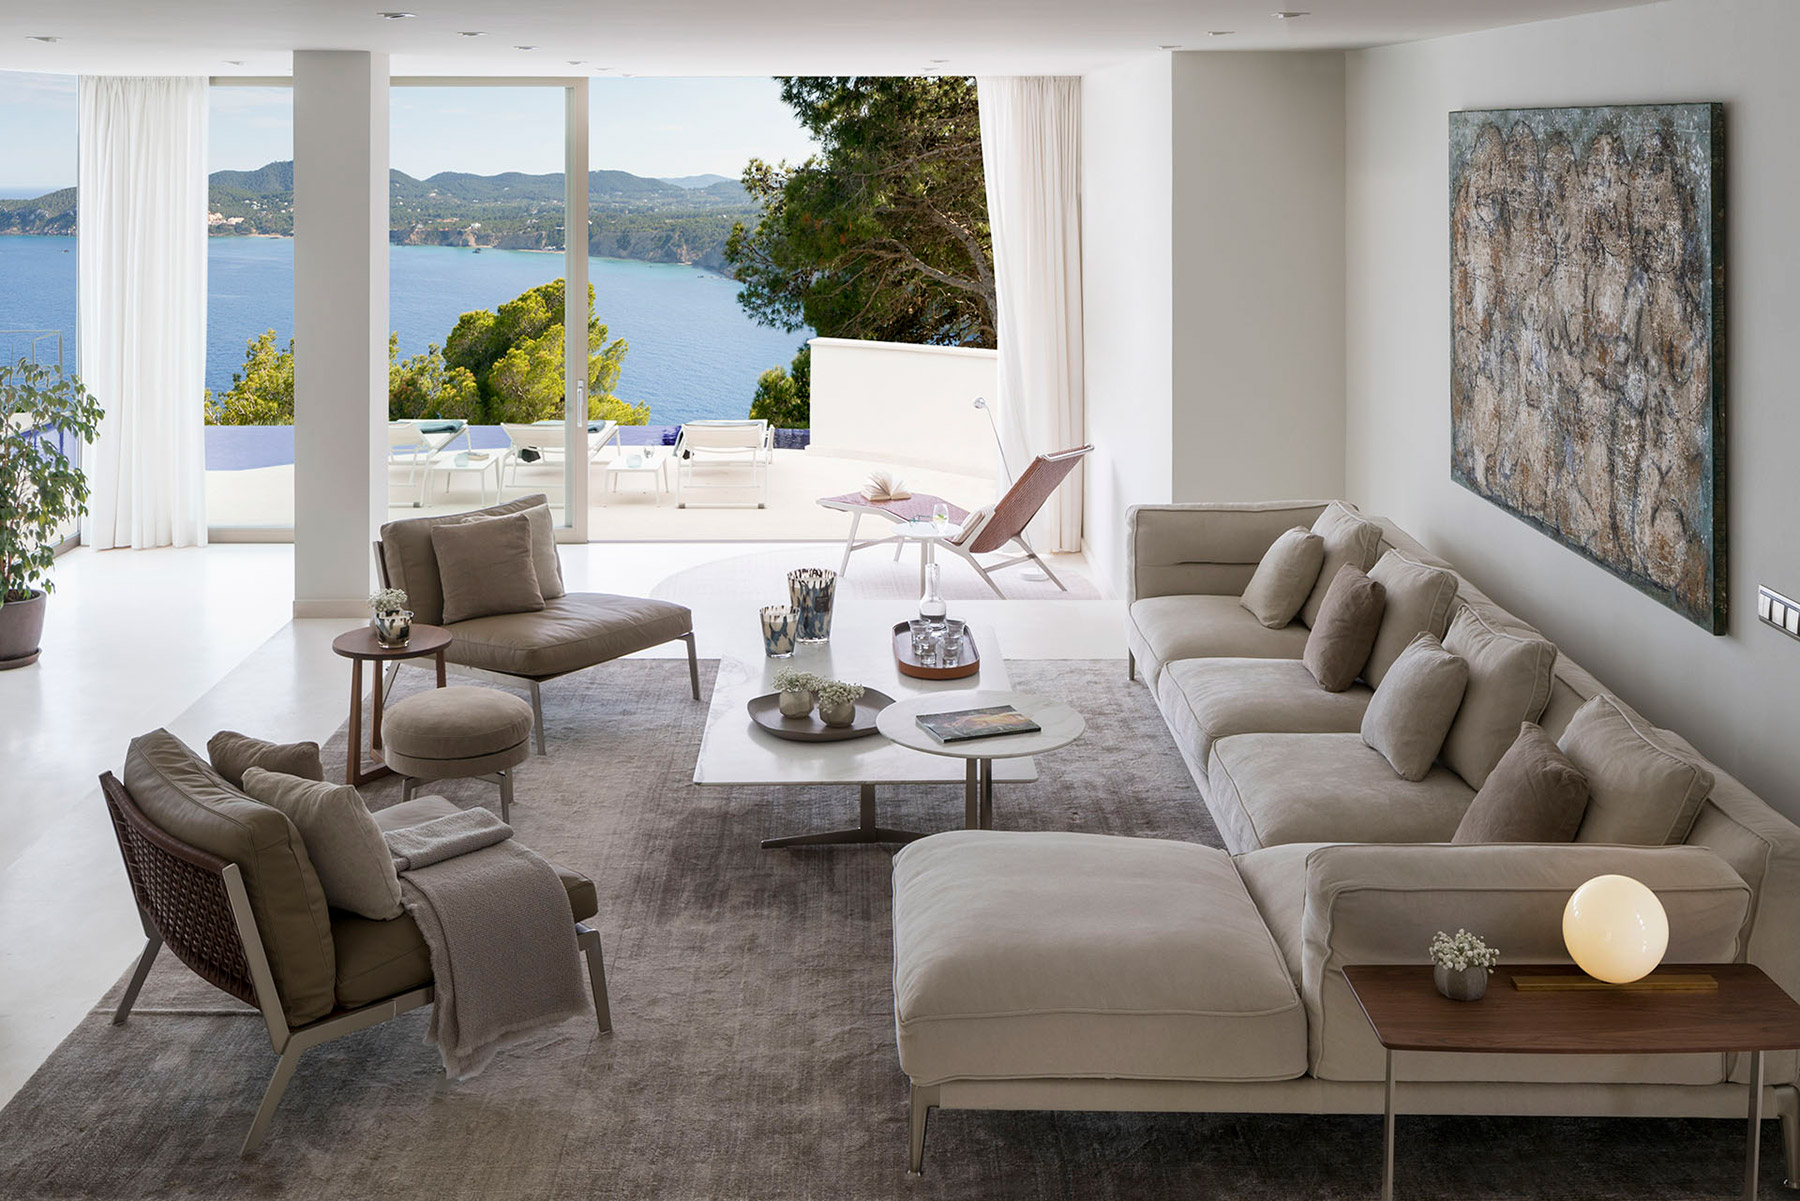 Terraza Balear diseña una casa familiar en Ibiza con el estilo exquisito propio de este estudio de interiorismo